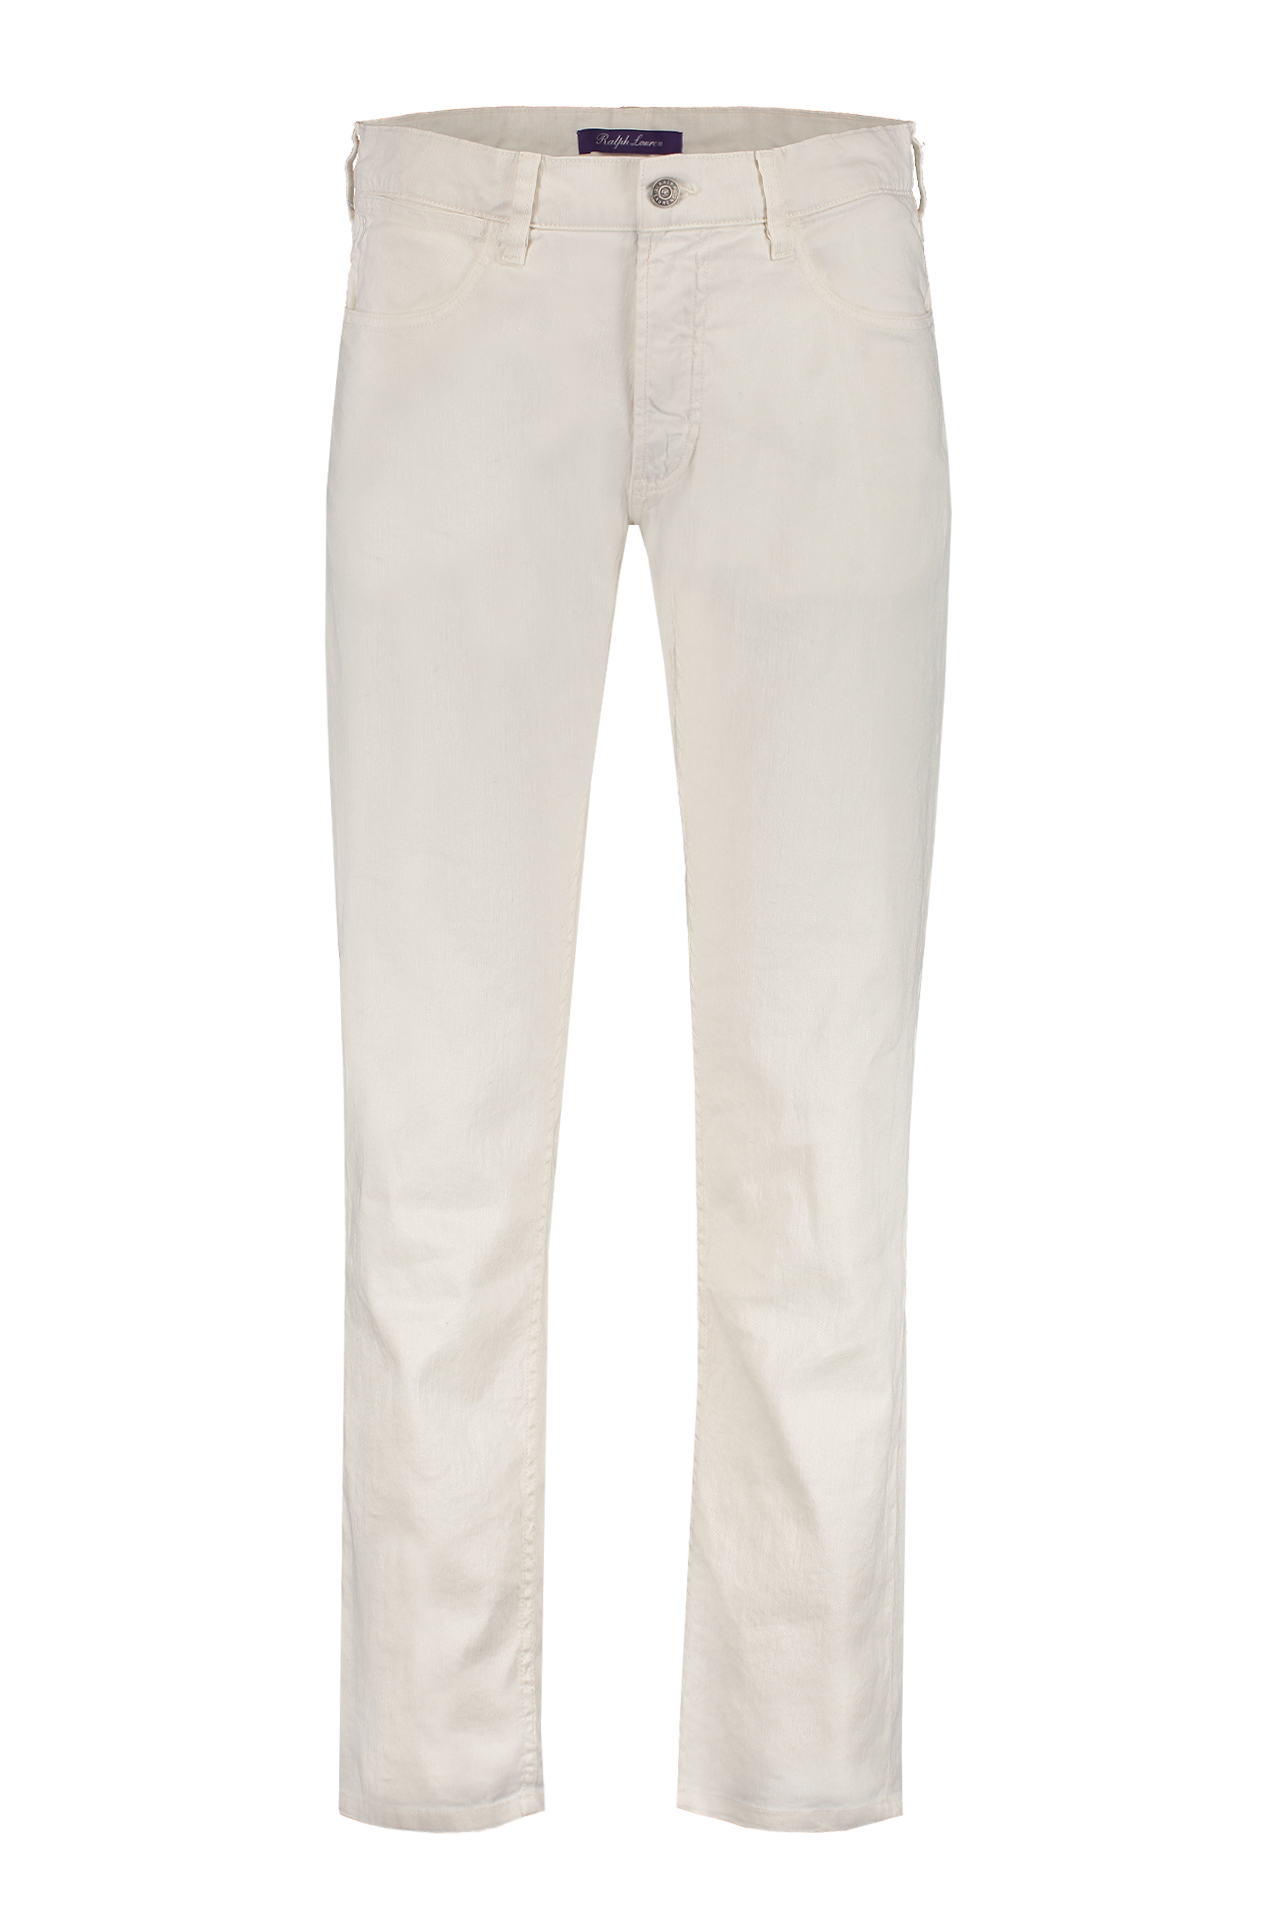 Slim Fit Pique 5 Pocket Jean (7157377433715)